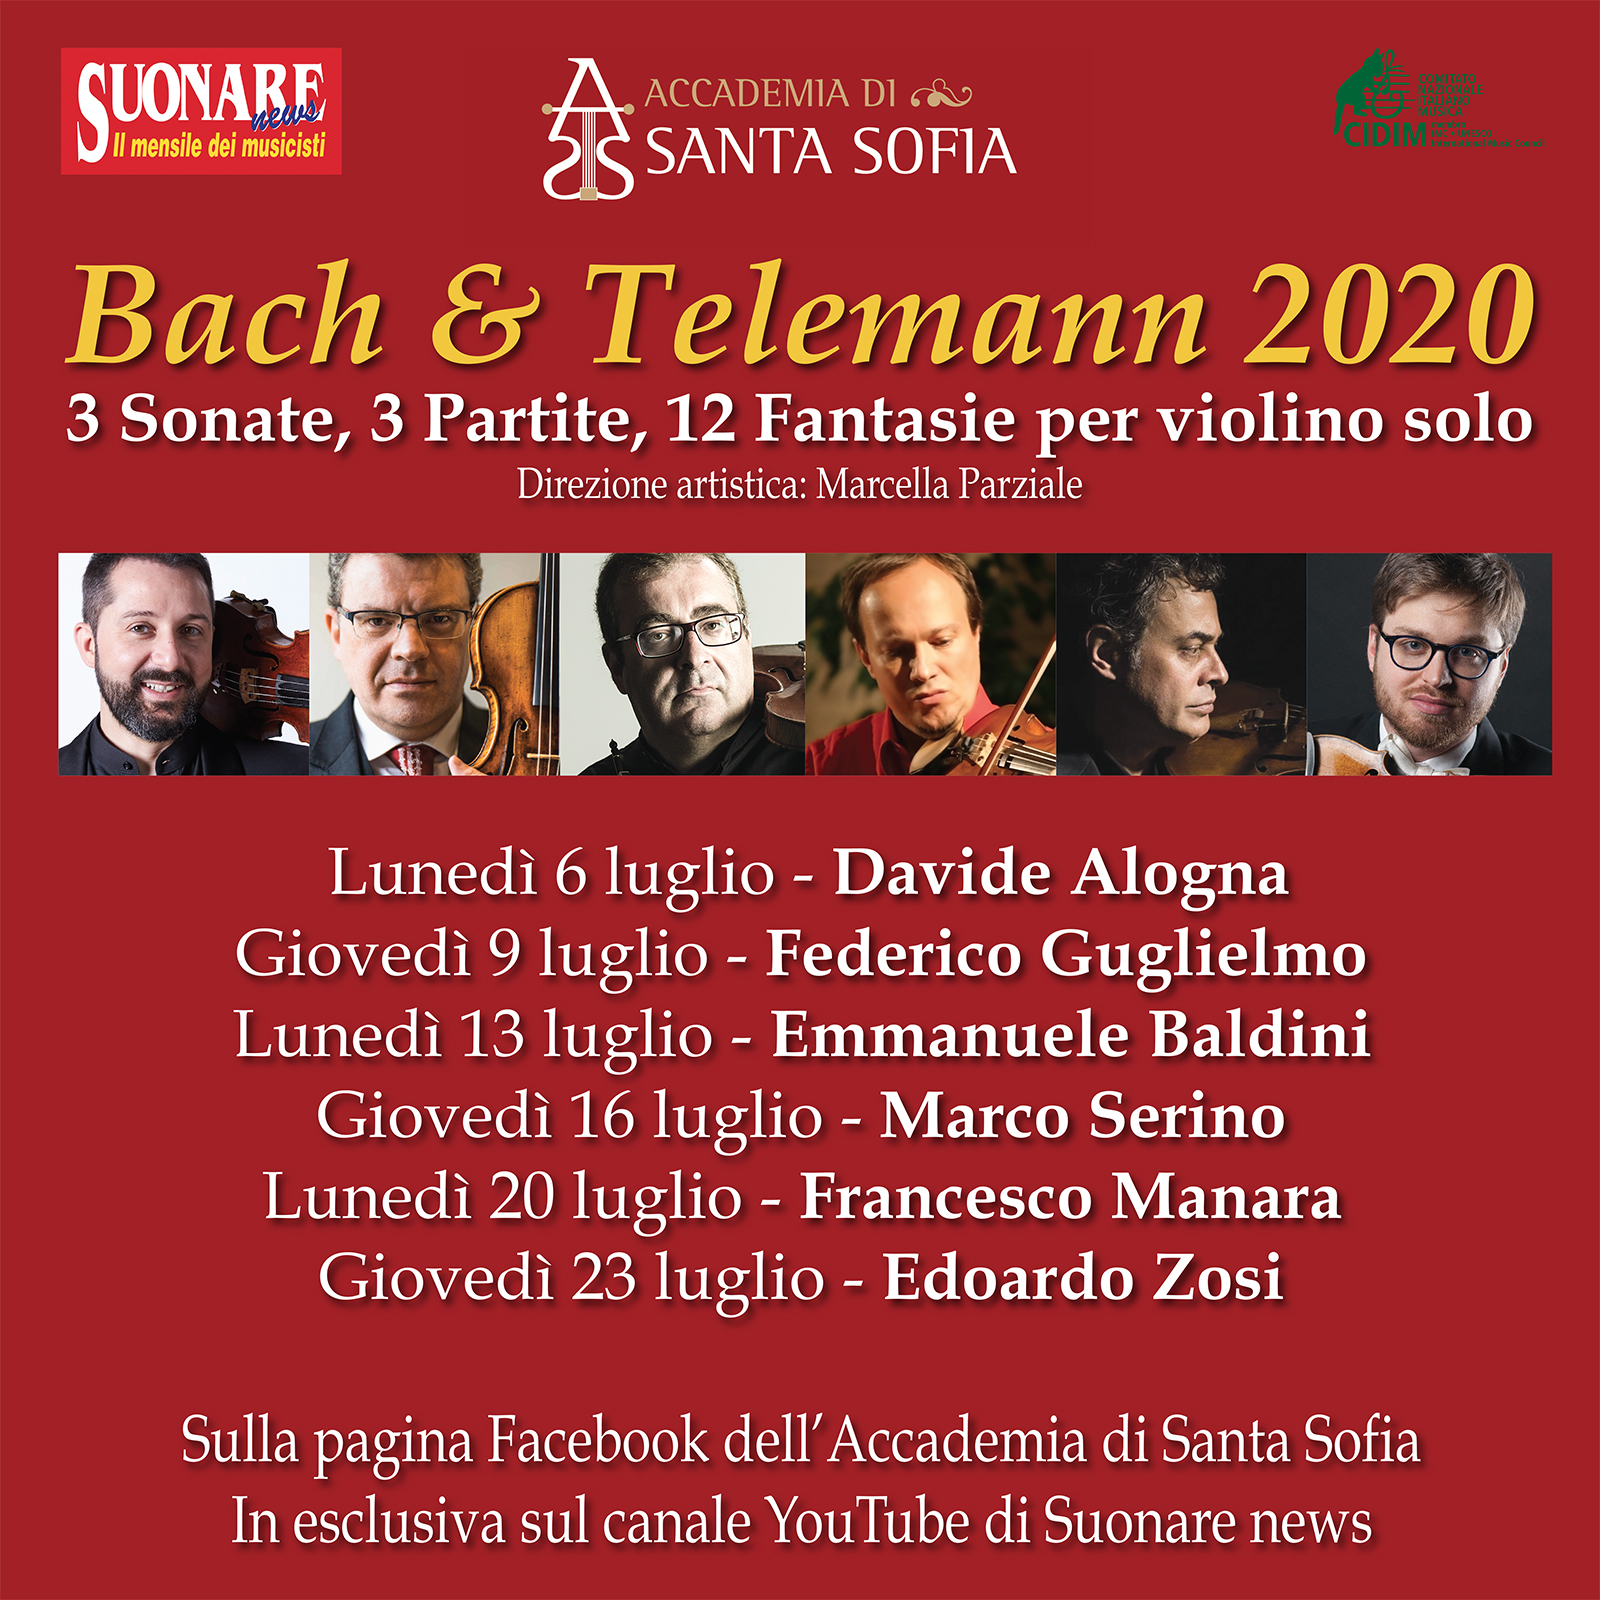 Bach & Telemann,la rassegna streaming dell’Accademia di Santa Sofia